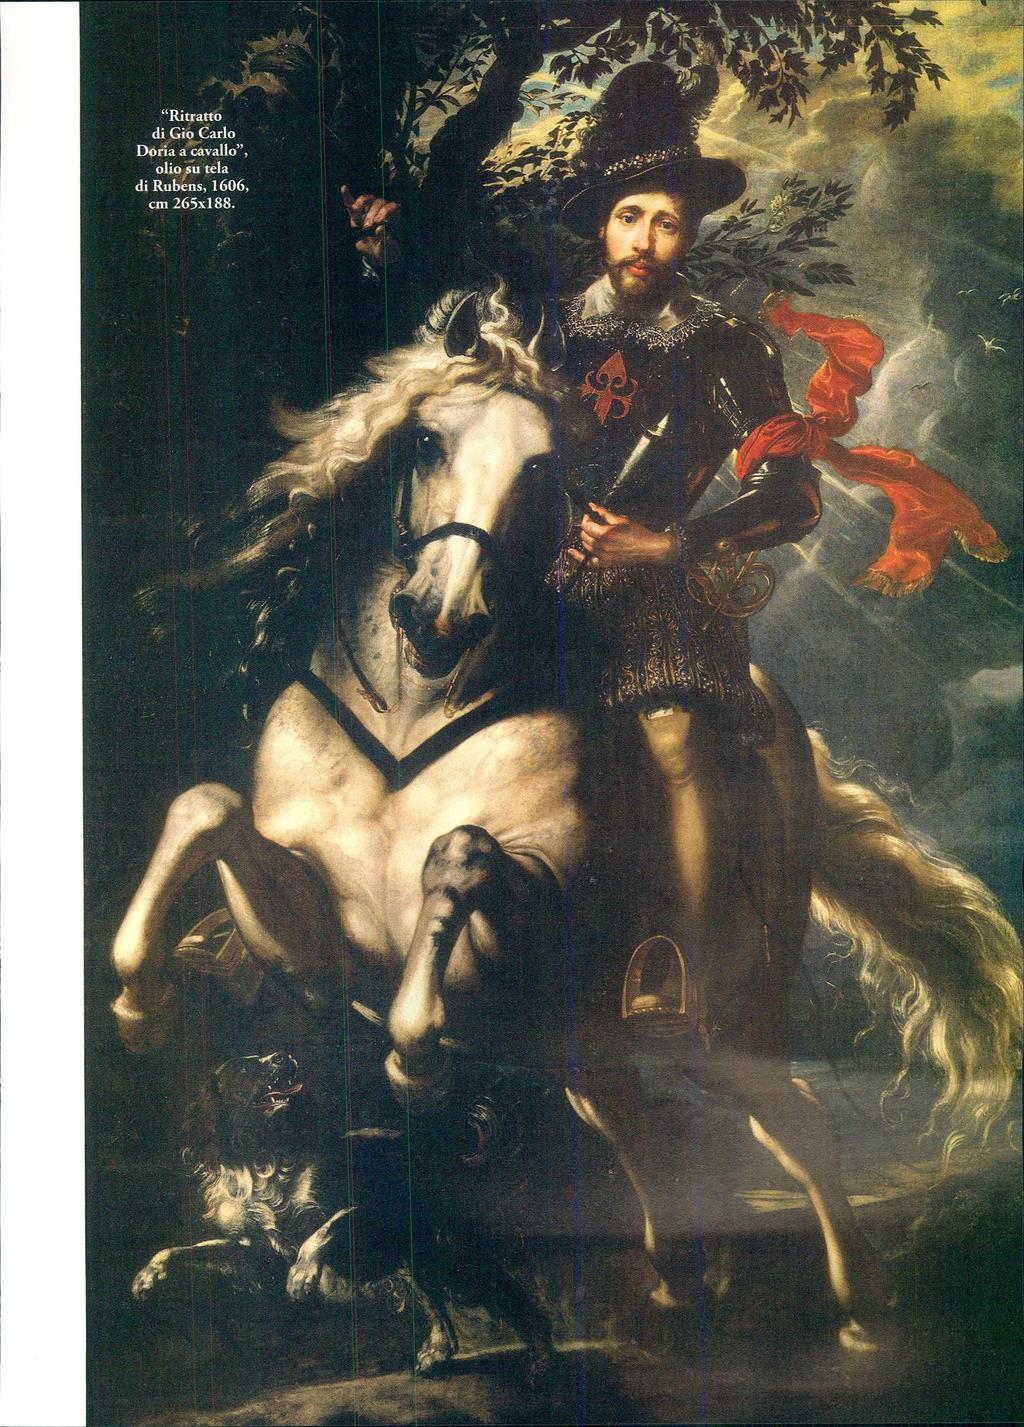 "Ritratto di Gio Carlo Doria a cavallo",